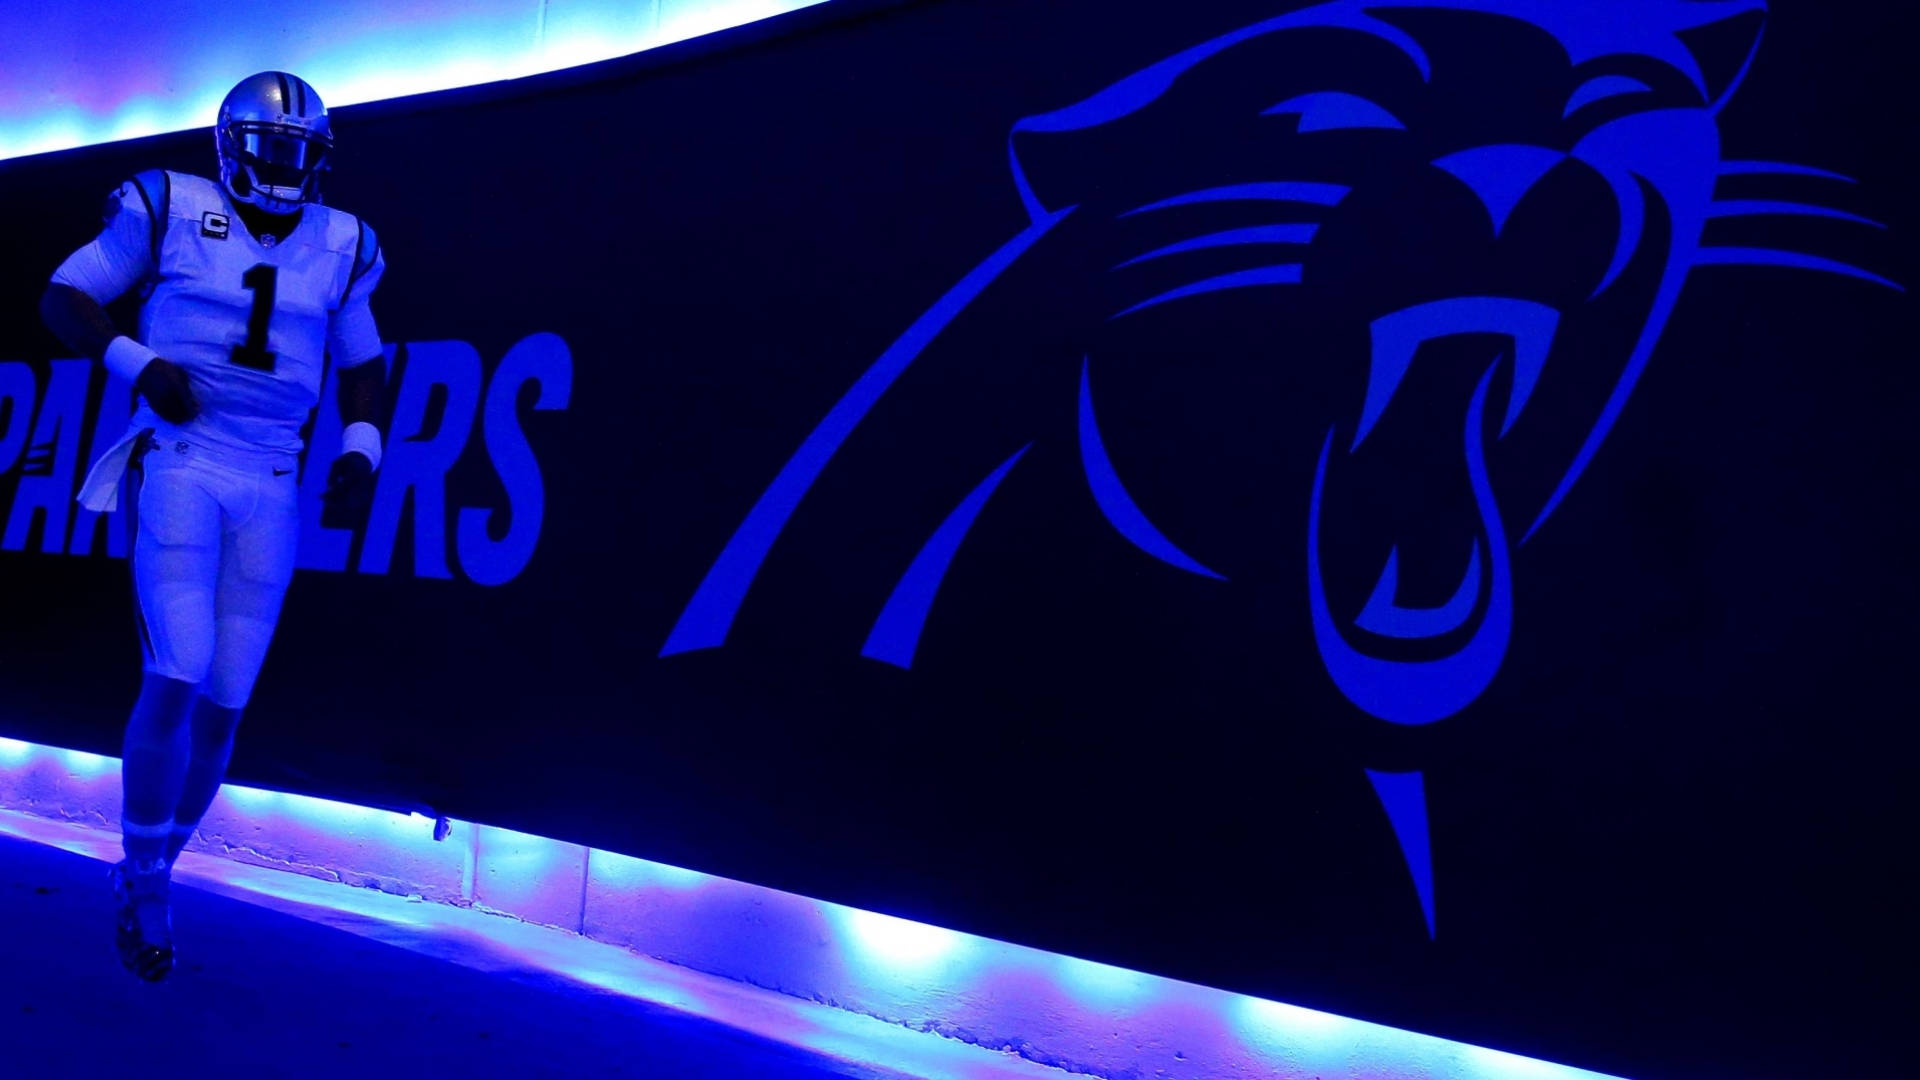 Carolina Panthers On Blue Light Background